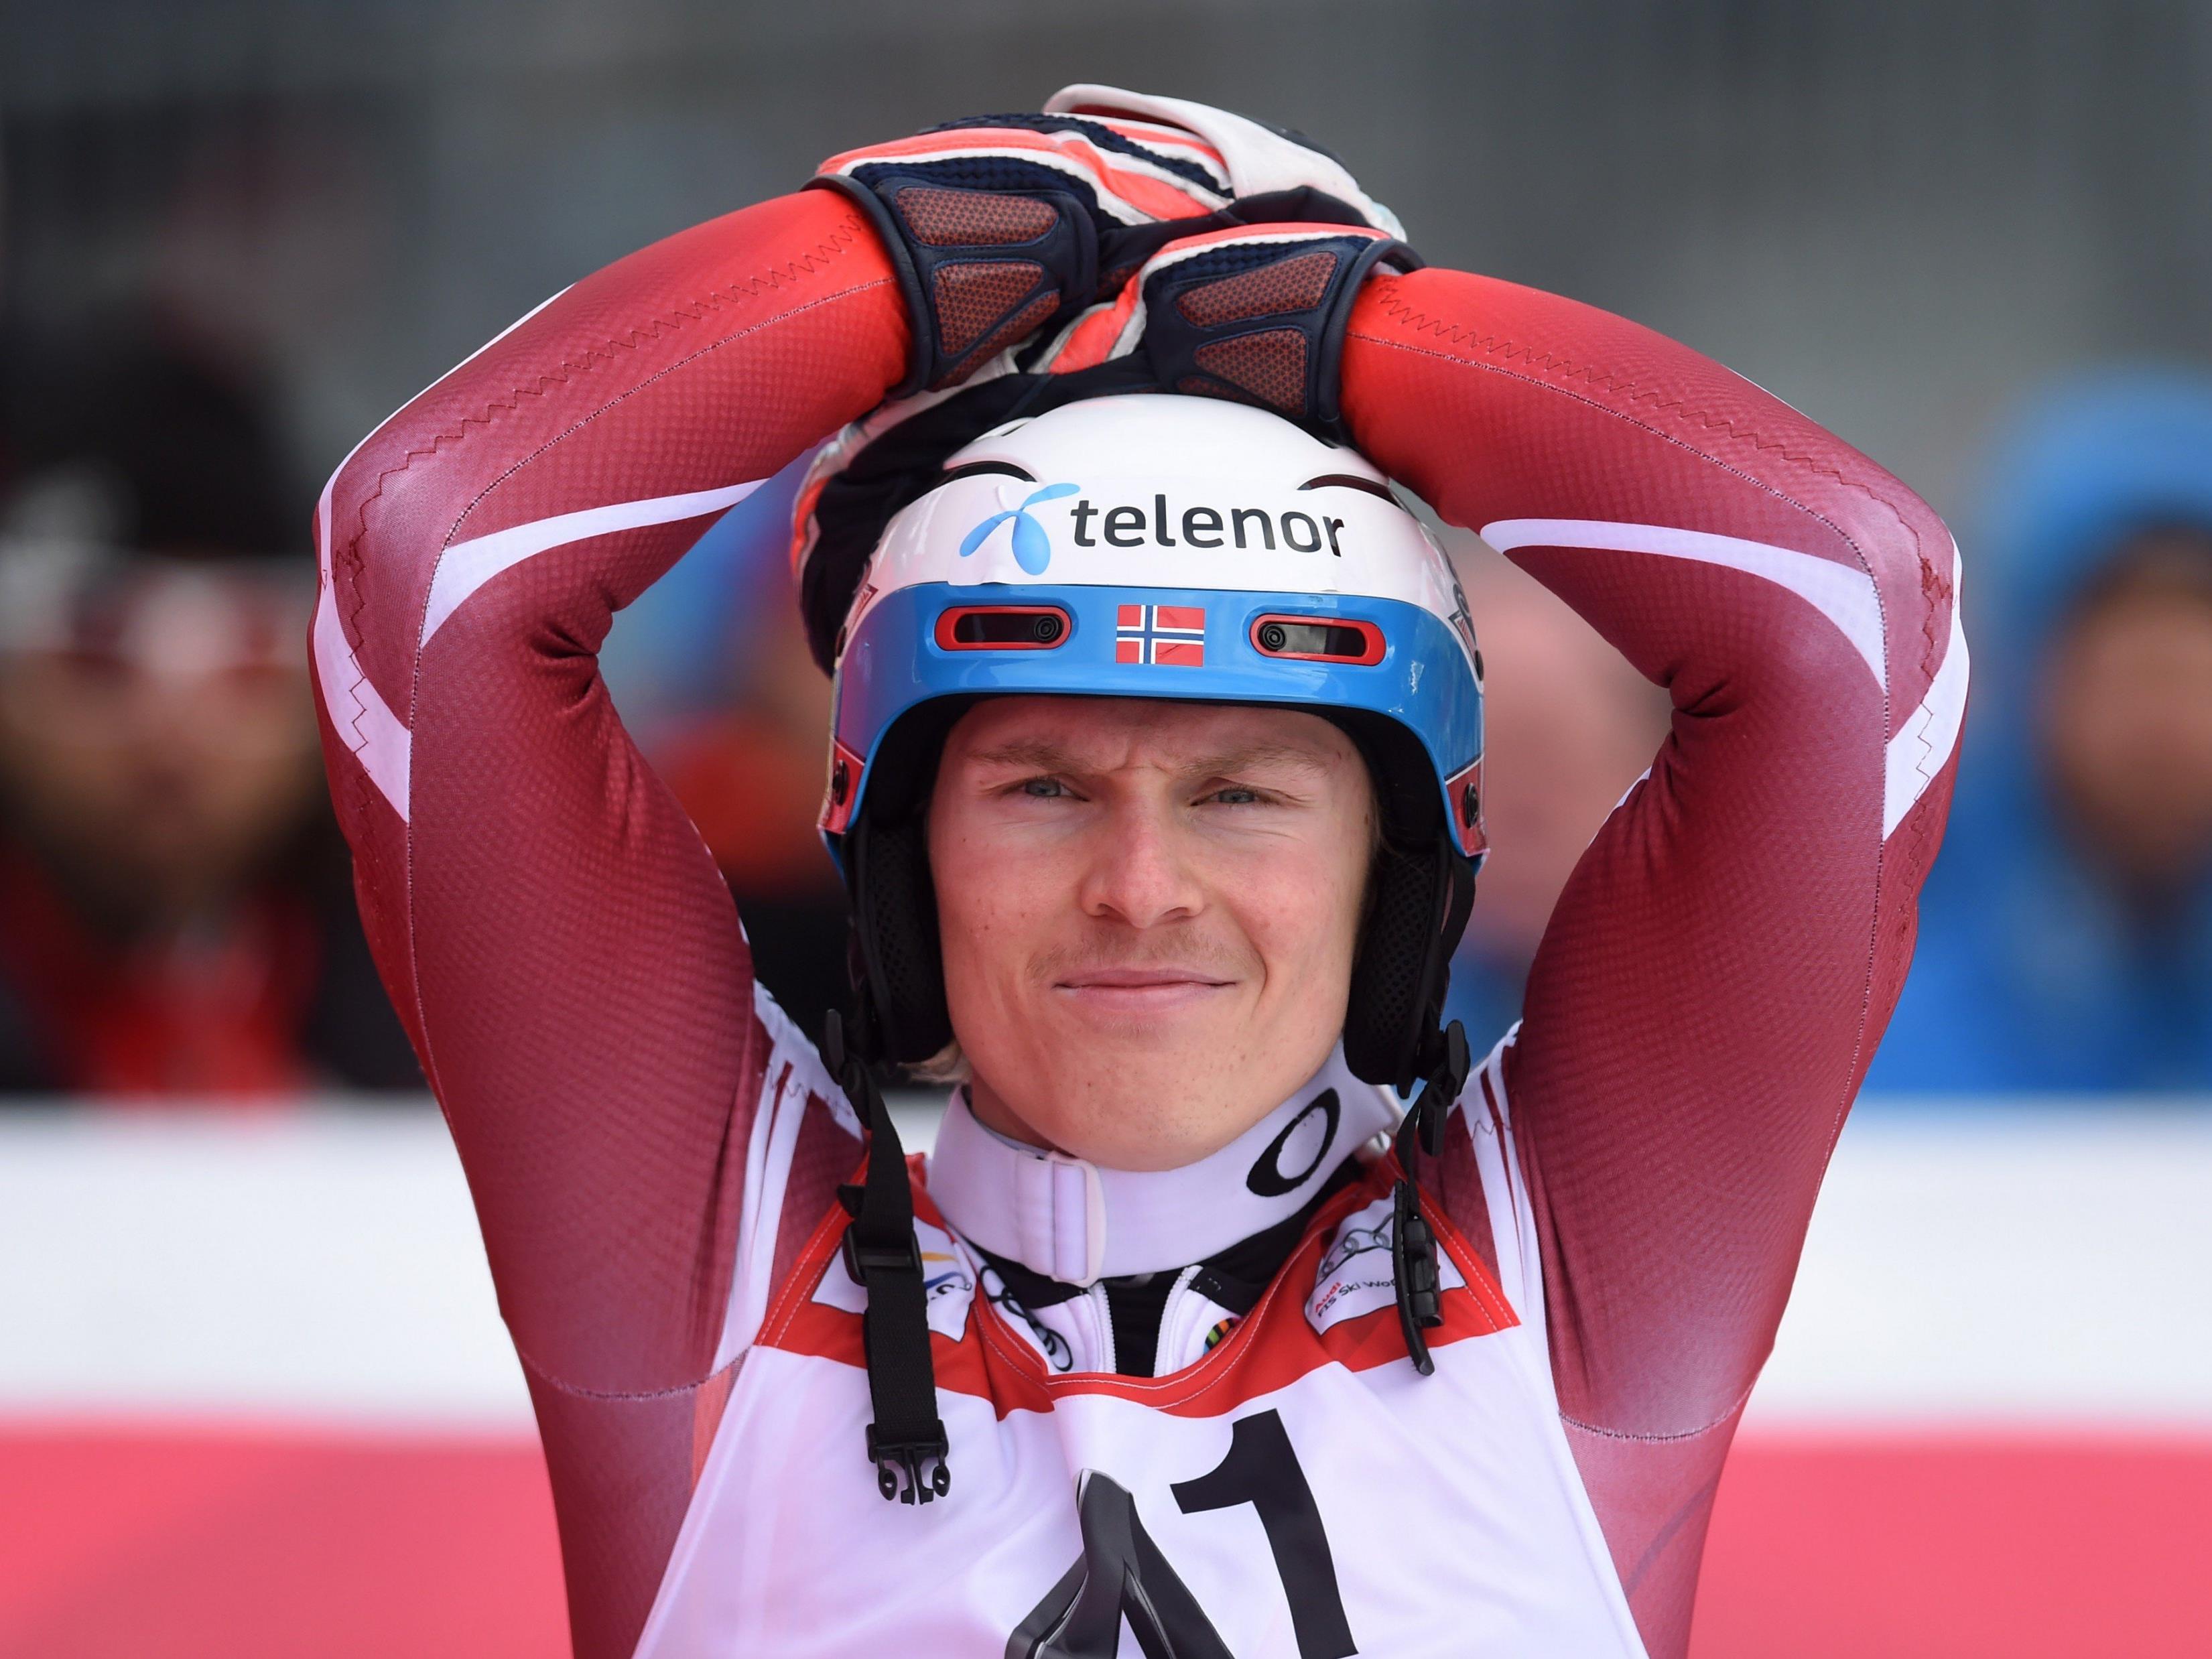 Das gesamte norwegische Team hat "telenor" als Kopfsponsor.